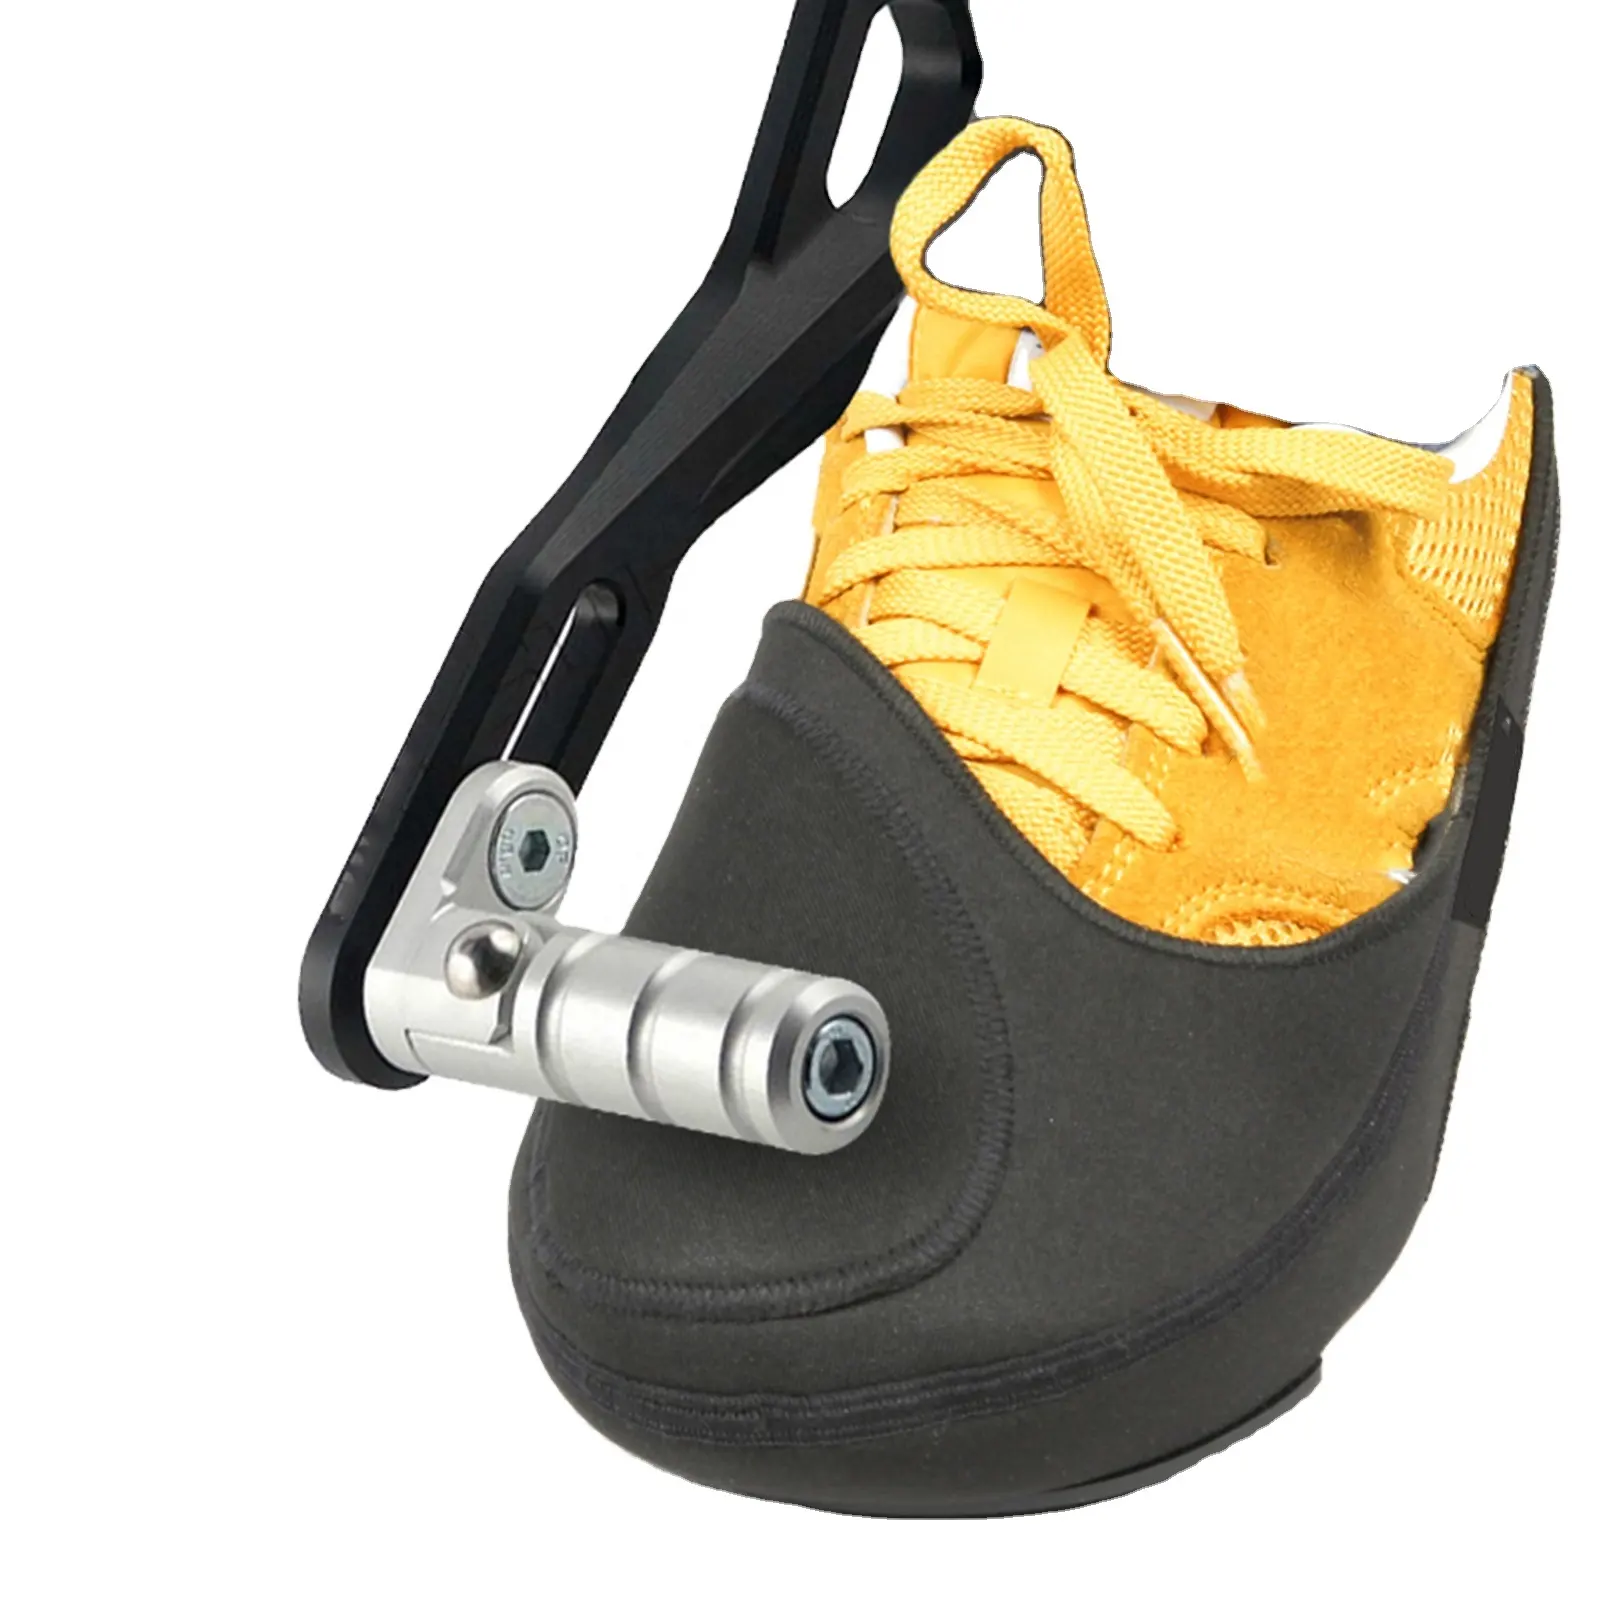 Protecteur de manette de vitesse pour moto Bottes de vitesse pour moto Protecteurs de chaussures de moto Protecteurs de manette de vitesse pour moto